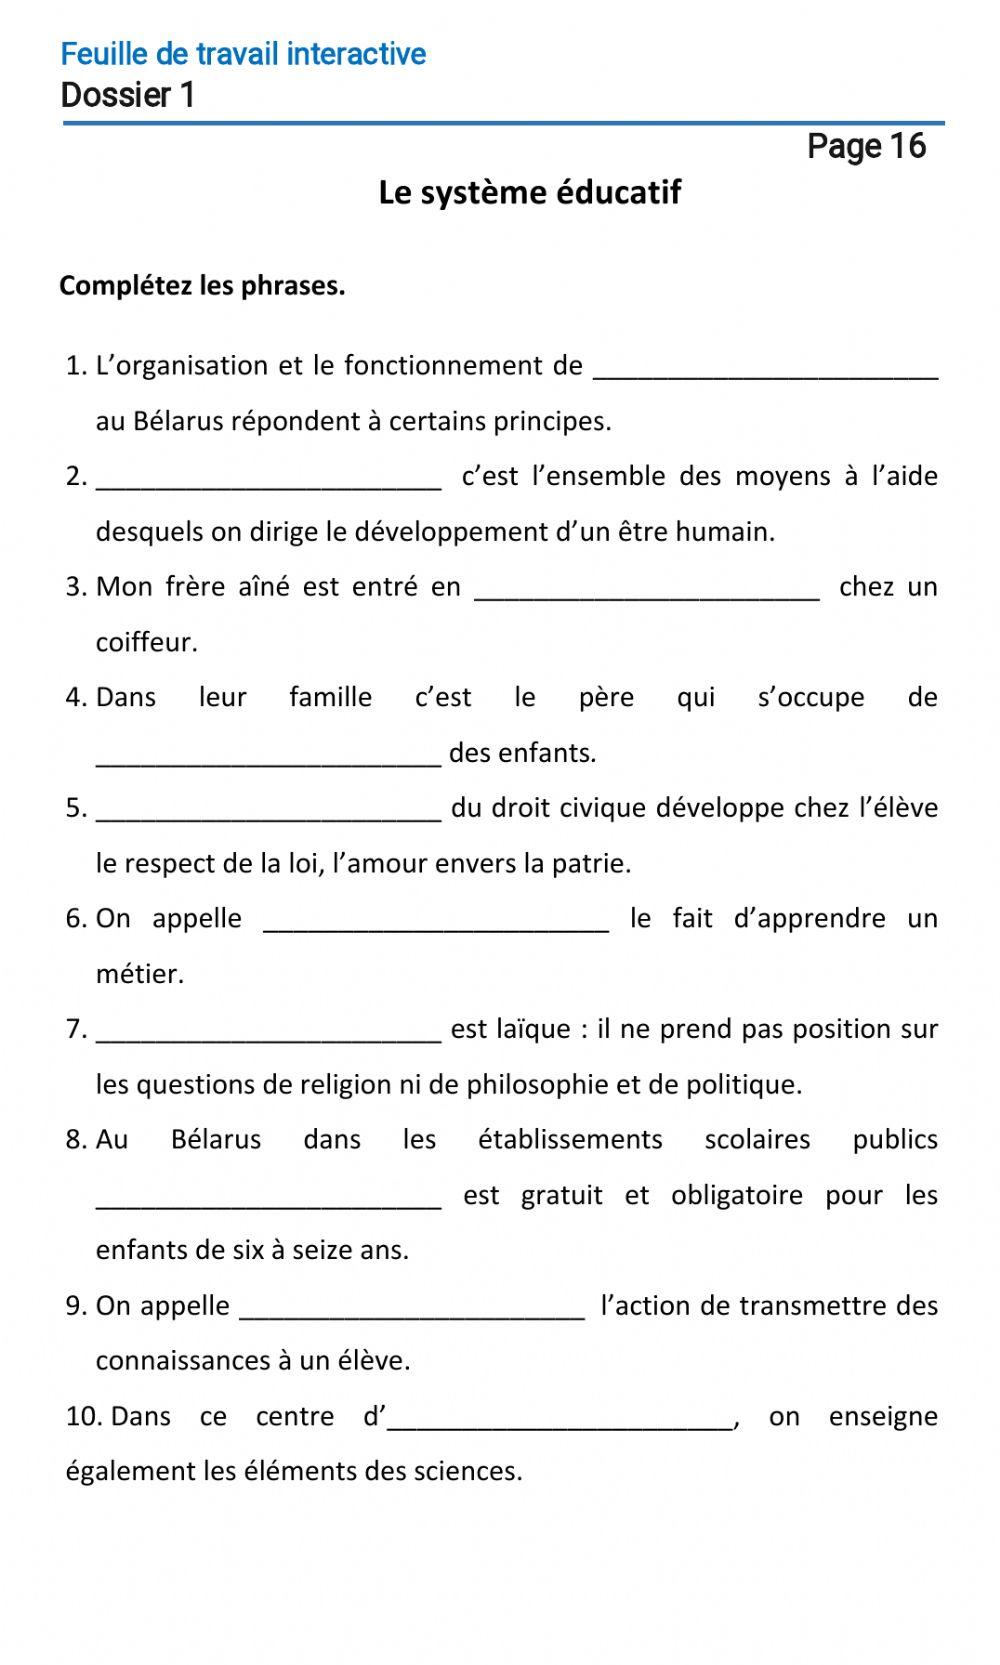 Le français-10 (повыш.)-Dossier 1-Page 16